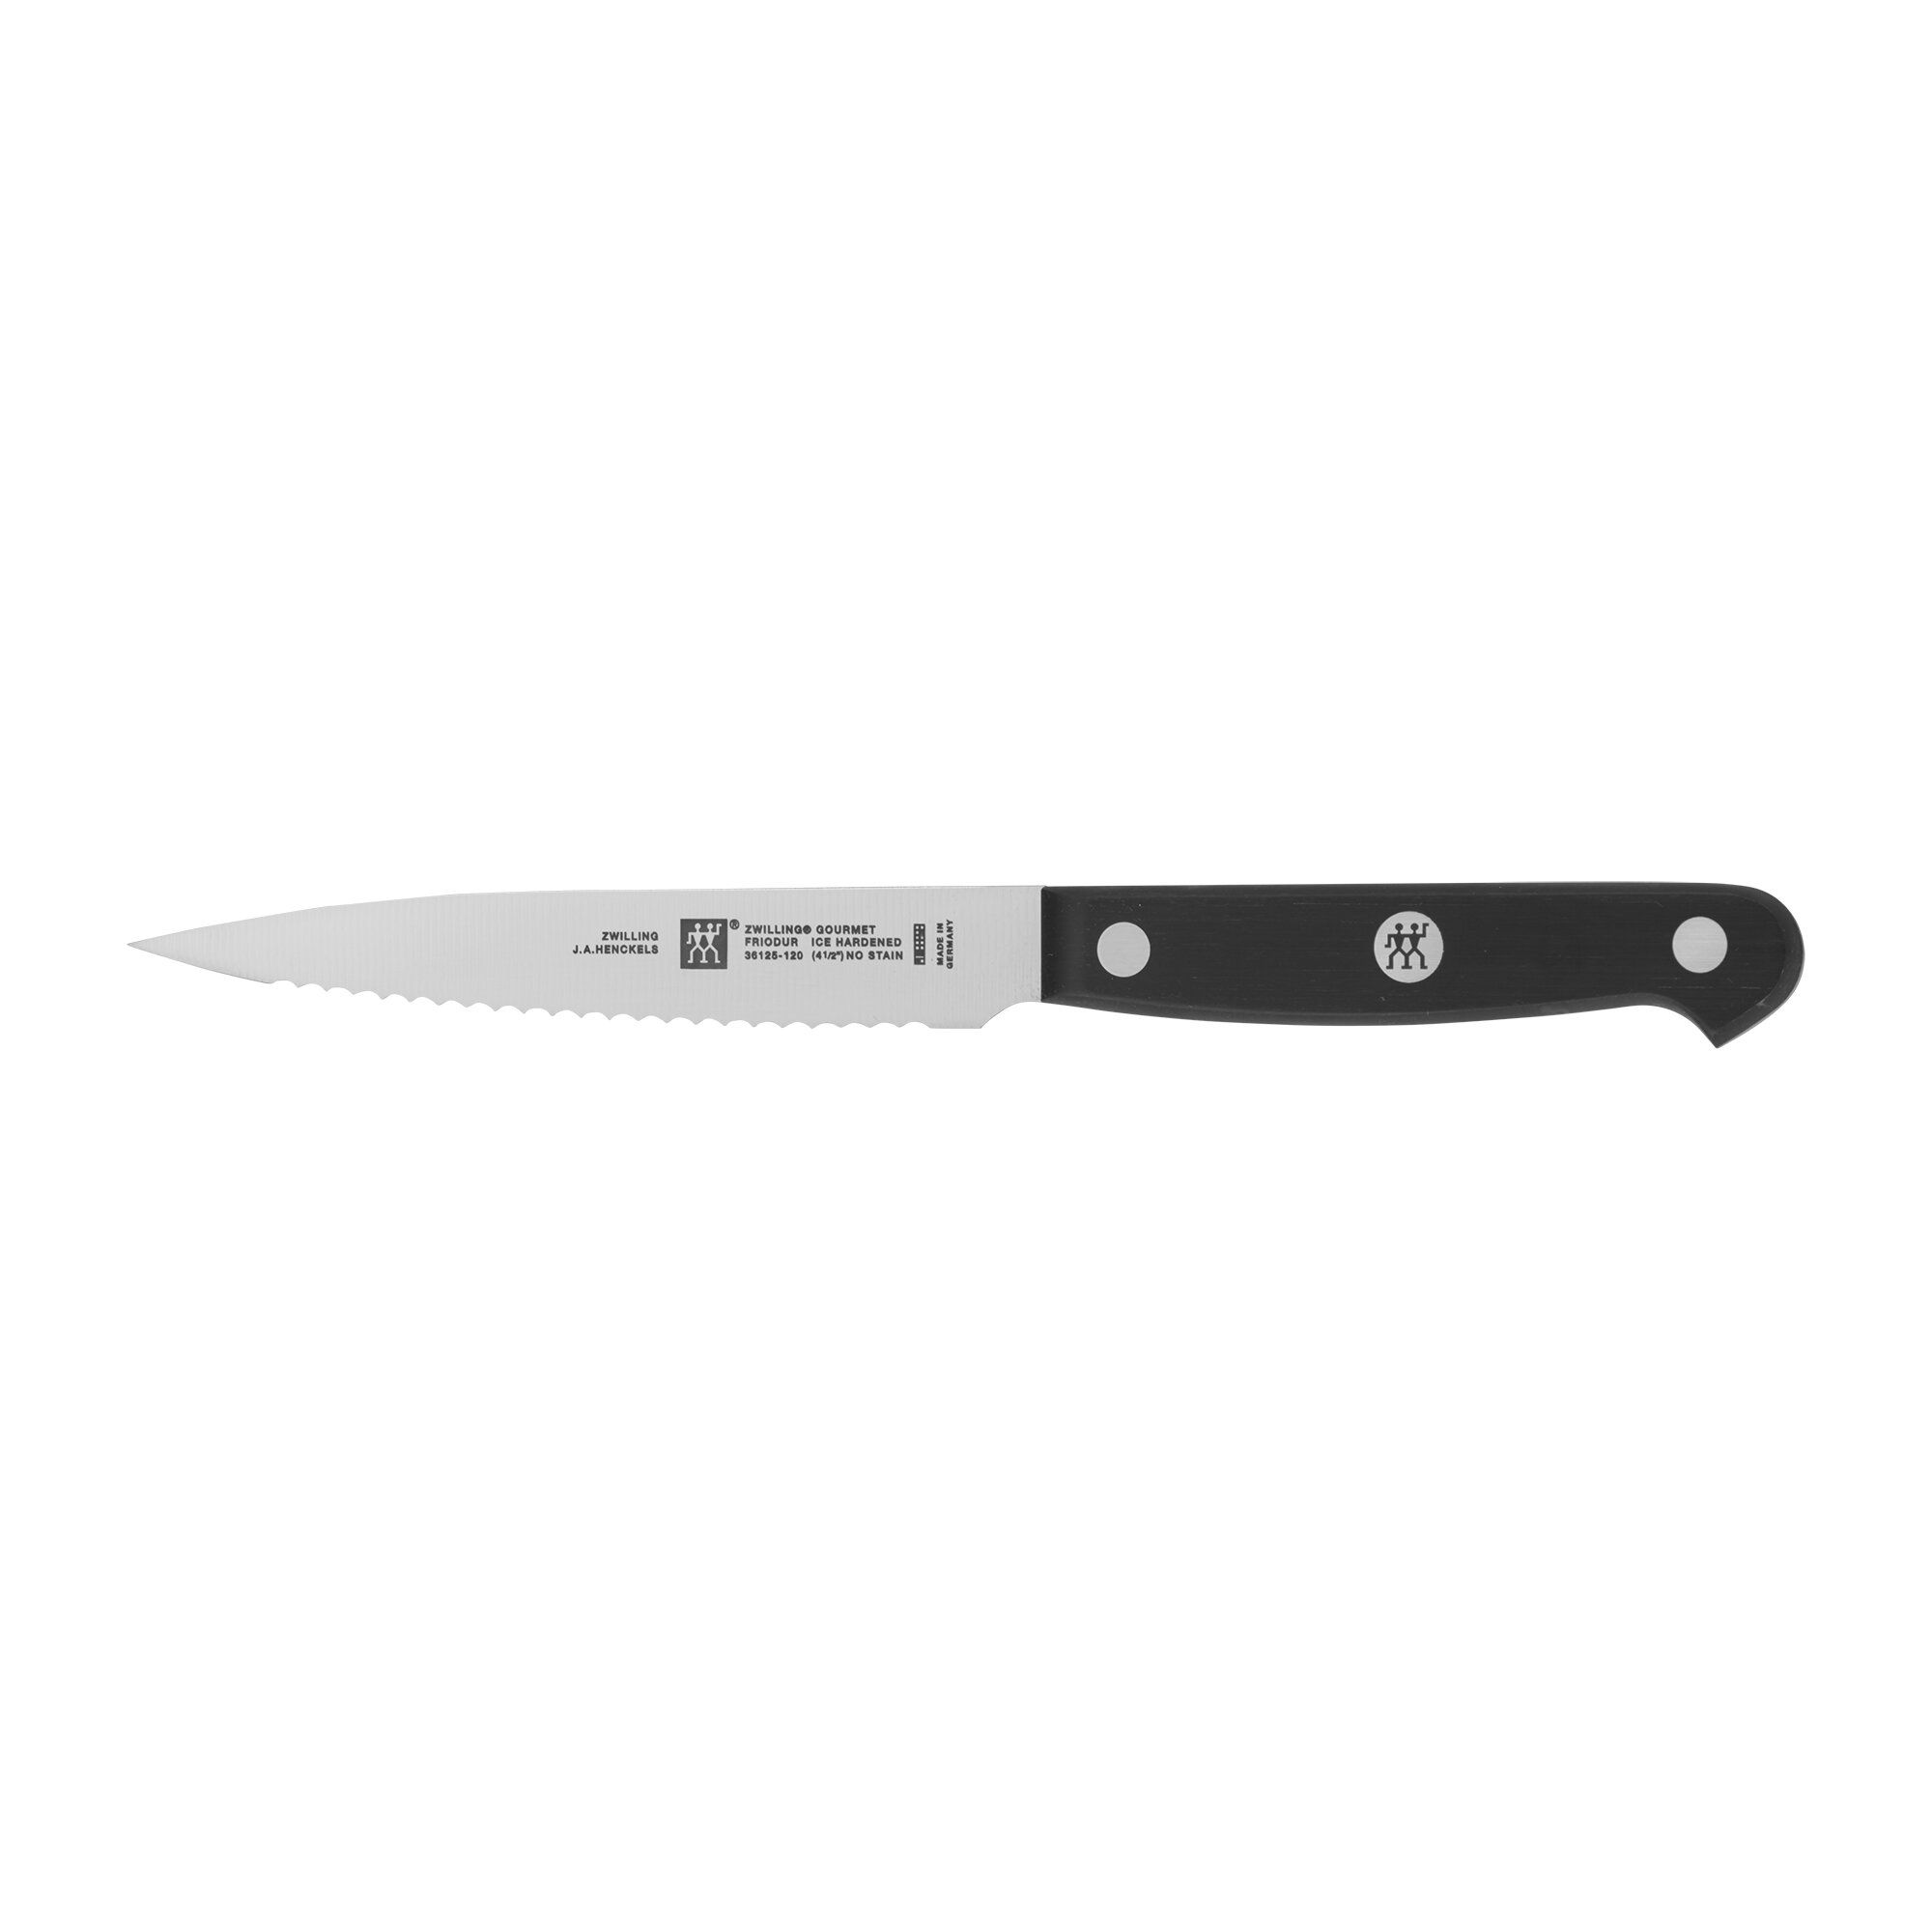 https://assets.wfcdn.com/im/63001044/compr-r85/7167/71671929/gourmet-472-inch-serrated-paring-knife.jpg